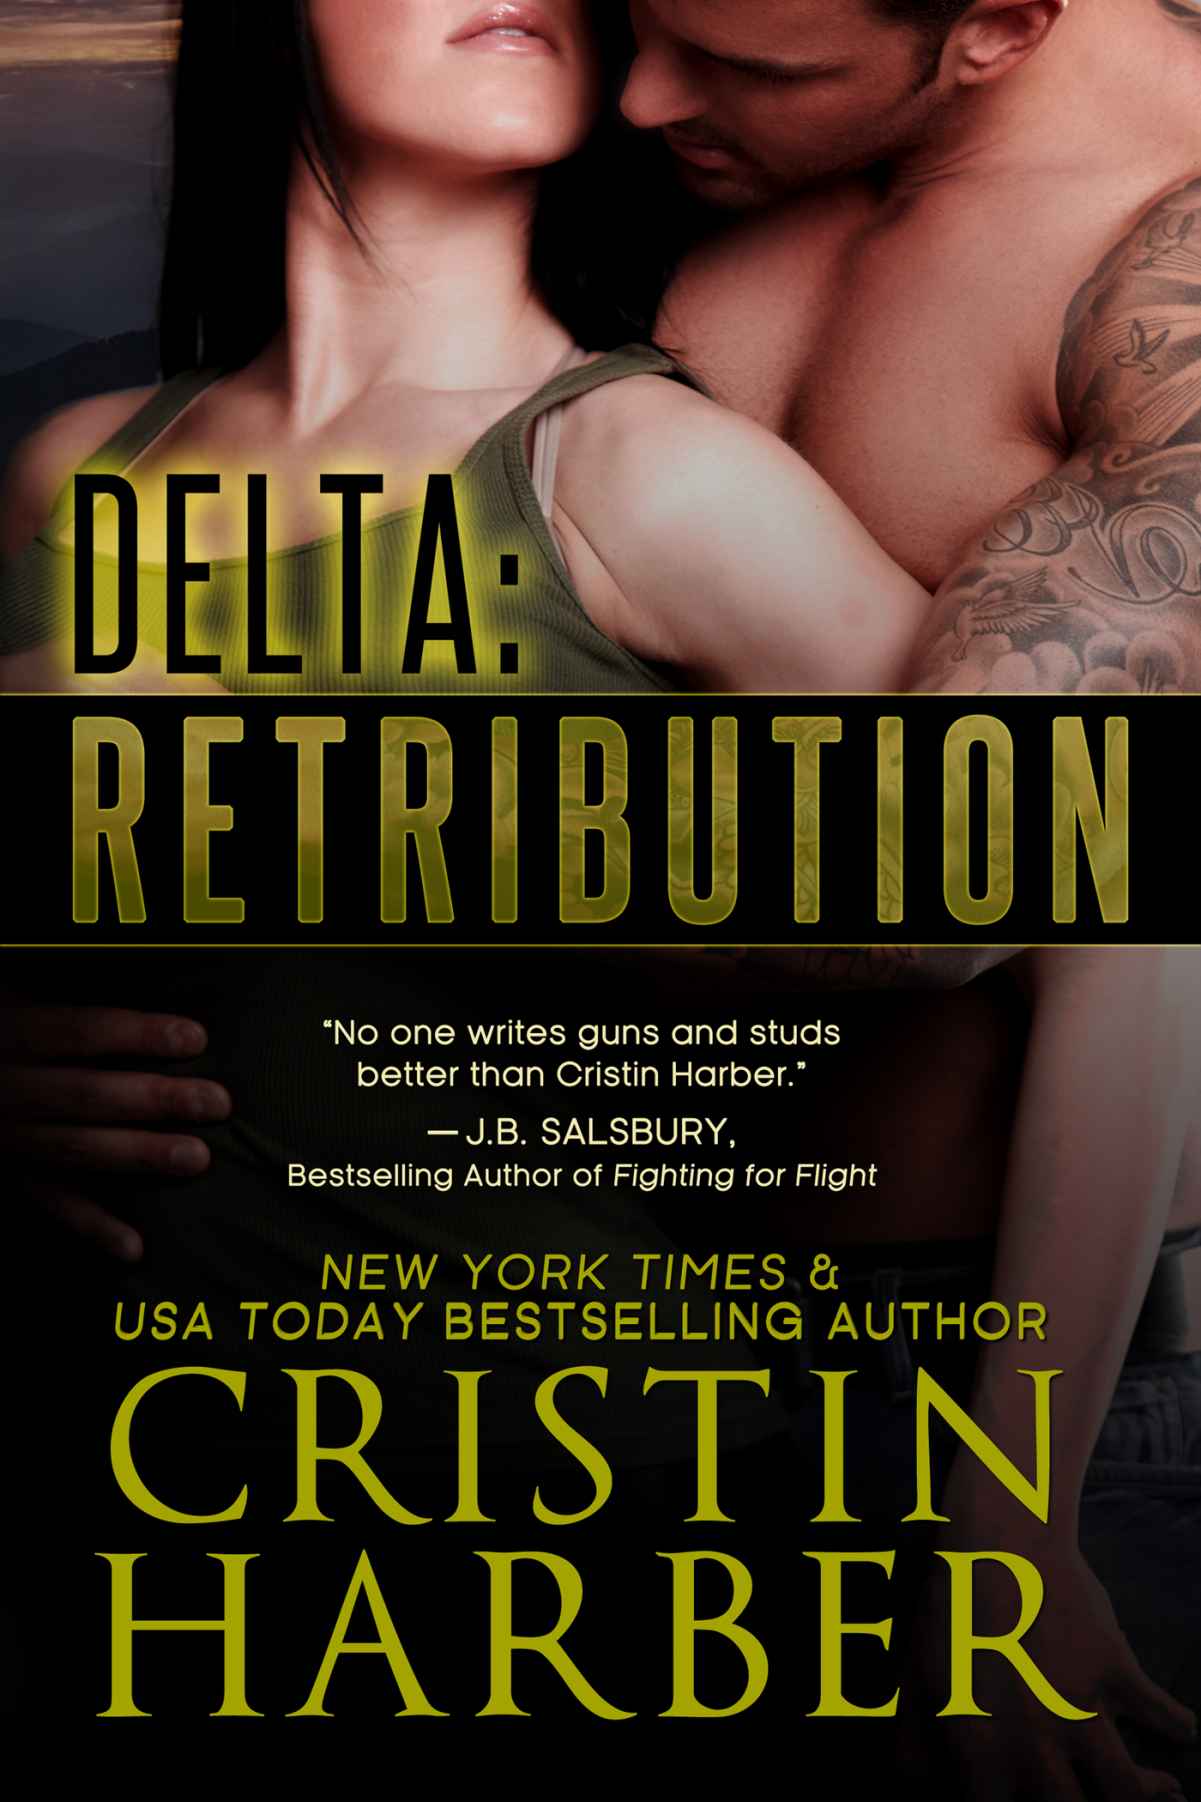 Delta: Retribution